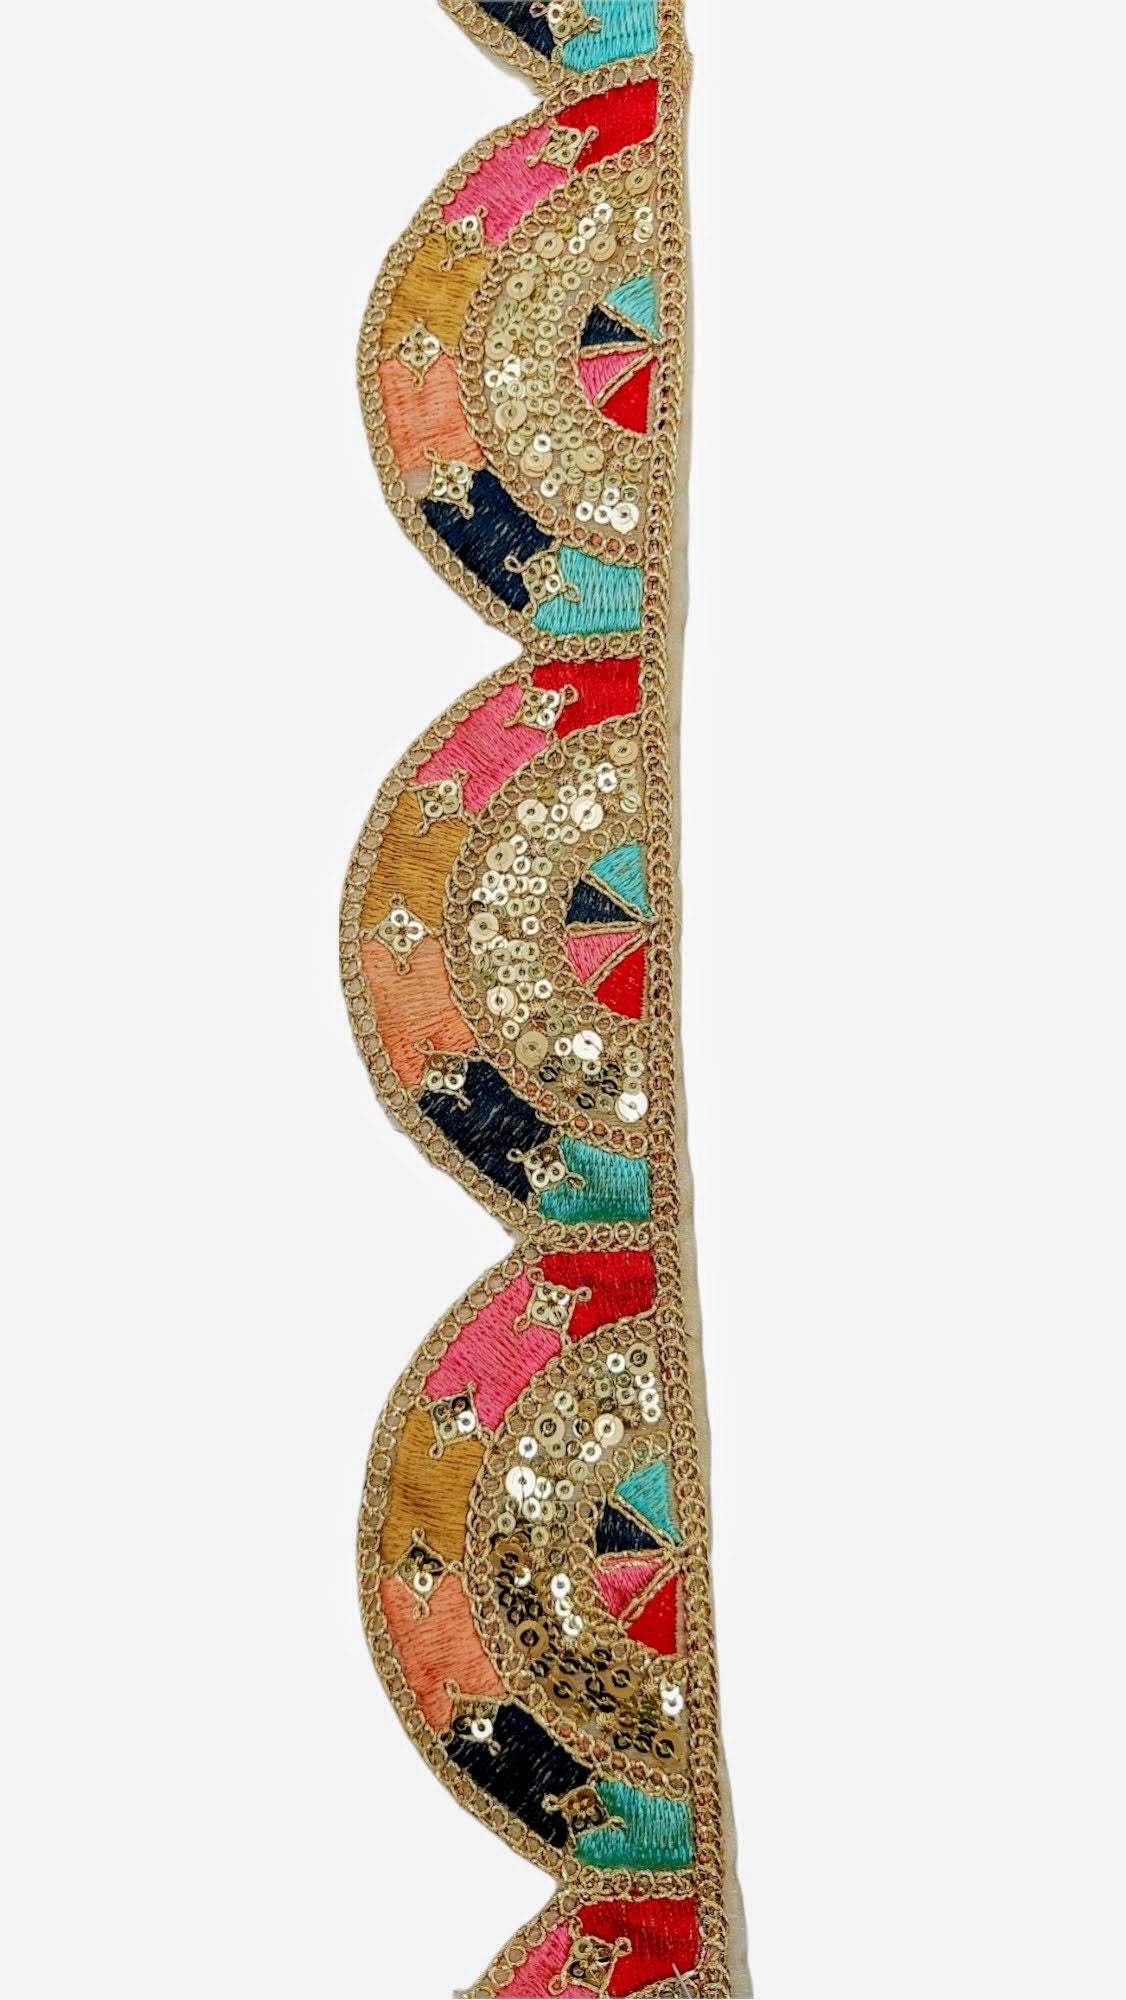 Multicoloured Embroidered Trim, Decorative Trim, Indian Sari Border Sequin Trimming